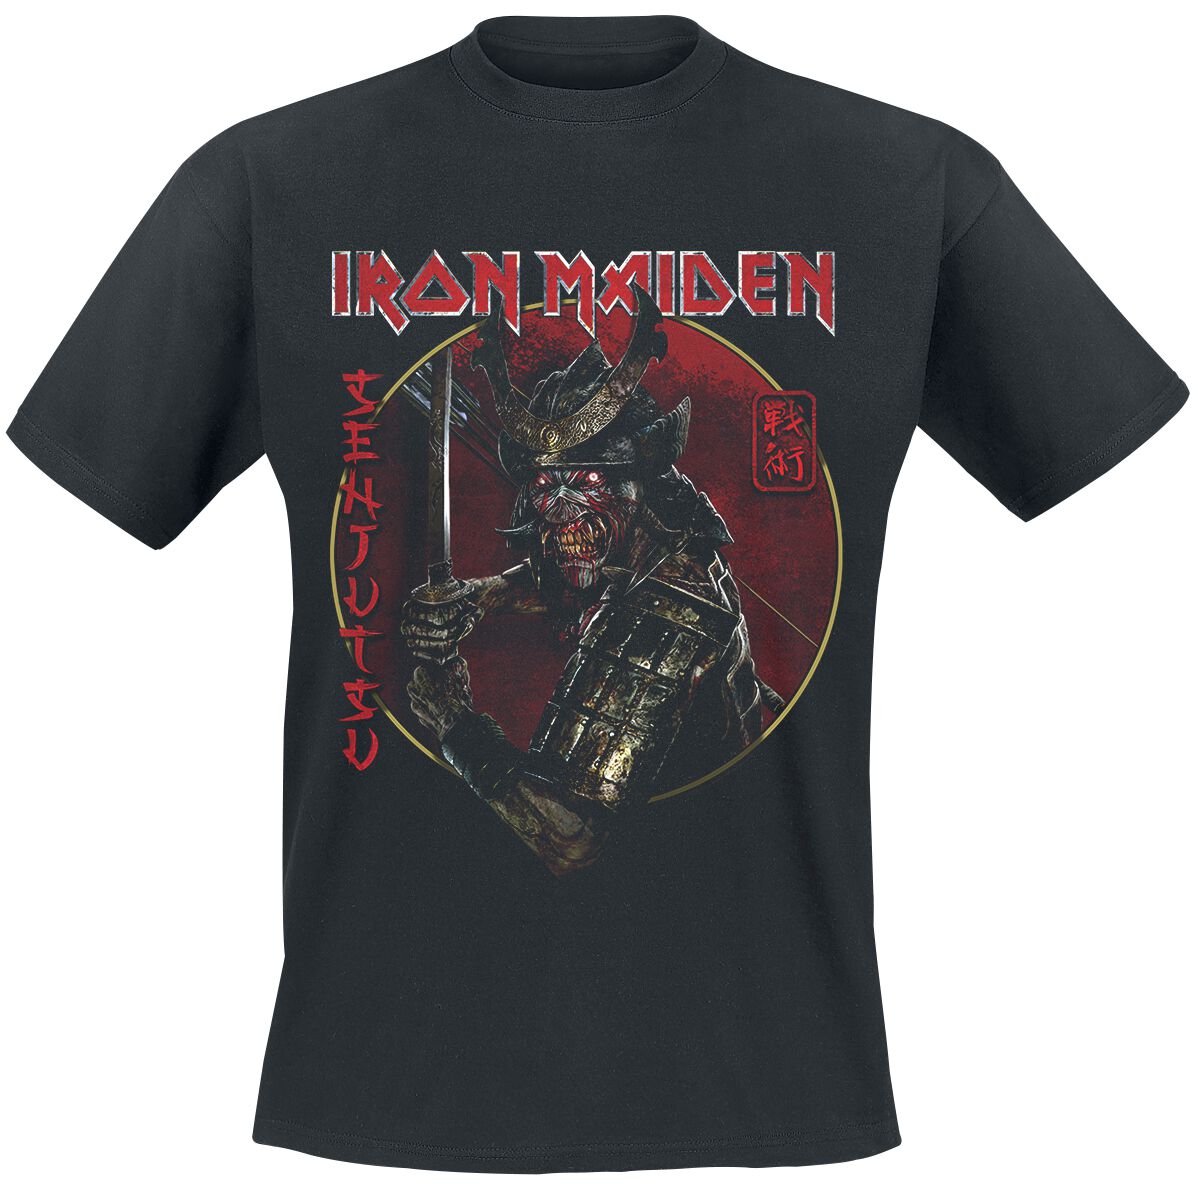 Iron Maiden T-Shirt - Senjutsu Eddie Gold Circle - S bis 4XL - für Männer - Größe M - schwarz  - EMP exklusives Merchandise!